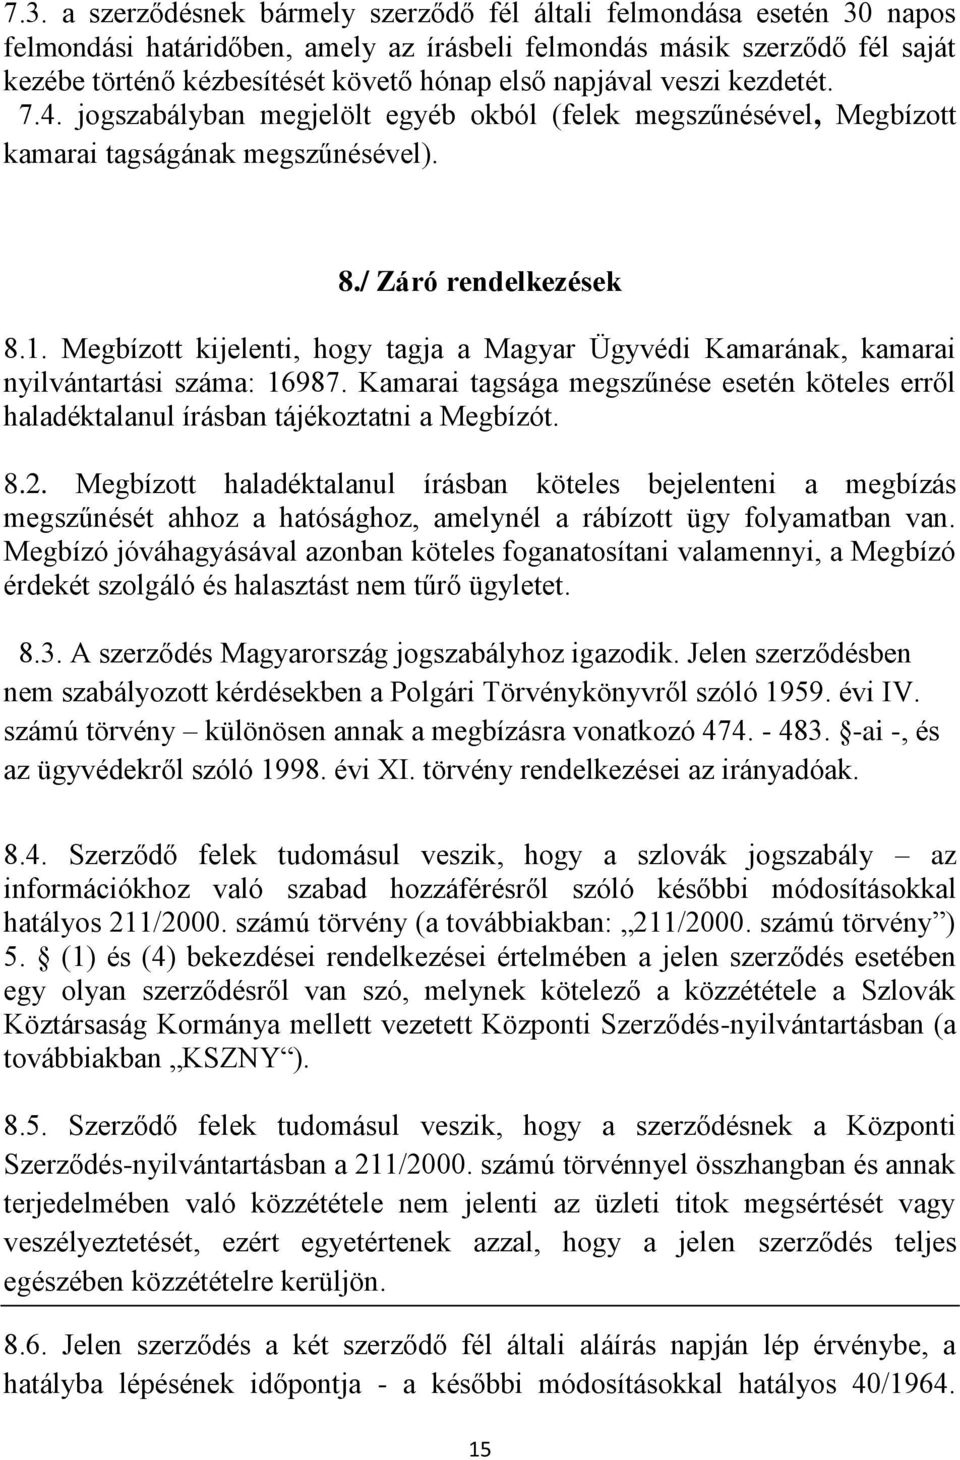 Megbízott kijelenti, hogy tagja a Magyar Ügyvédi Kamarának, kamarai nyilvántartási száma: 16987. Kamarai tagsága megszűnése esetén köteles erről haladéktalanul írásban tájékoztatni a Megbízót. 8.2.